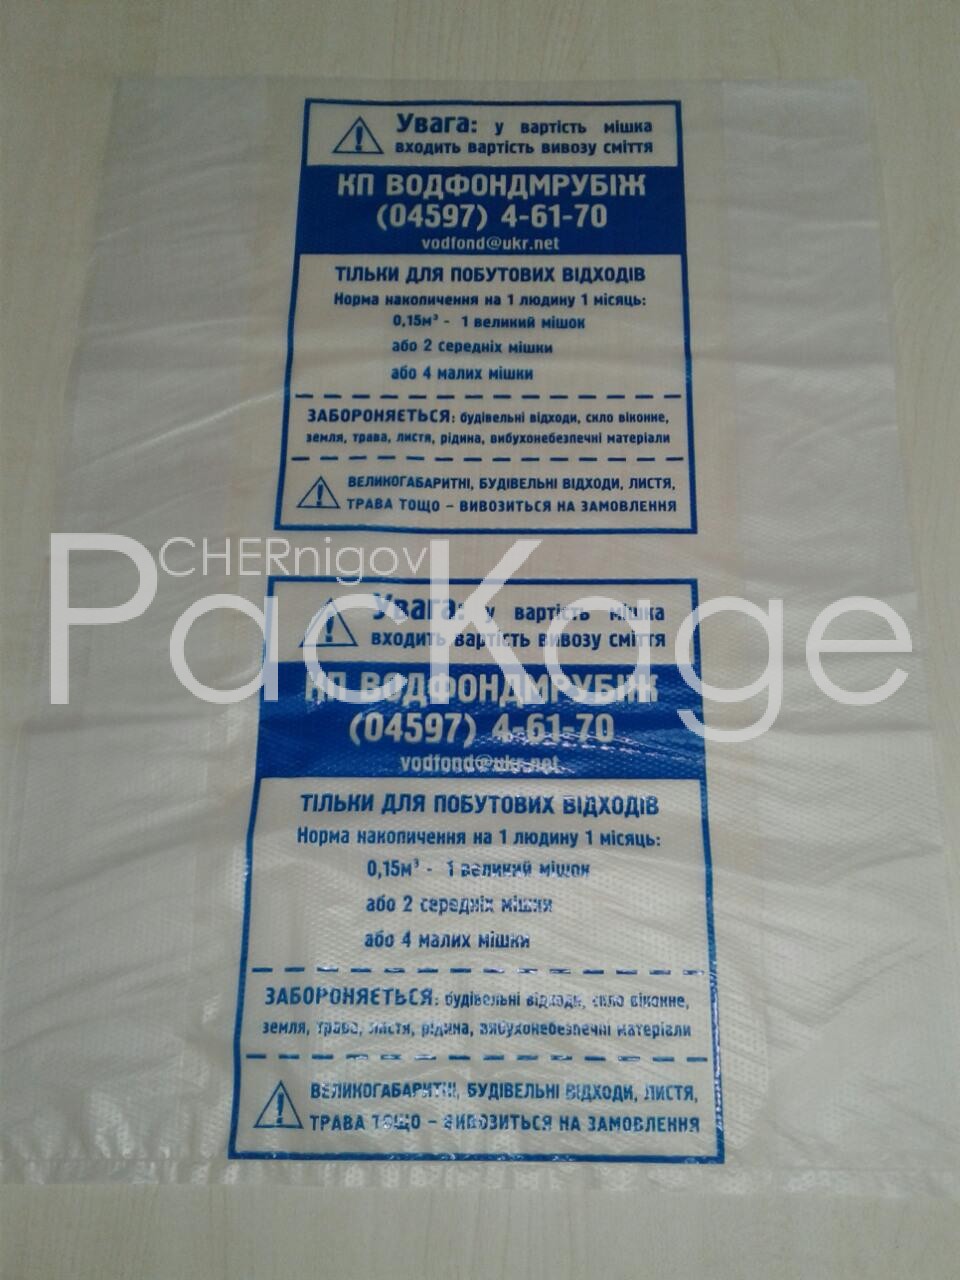 Полиэтиленовая пленка для фасовочных пакетов Chernigov Package - Photo фасовка пнд 30 мкм с тиснением